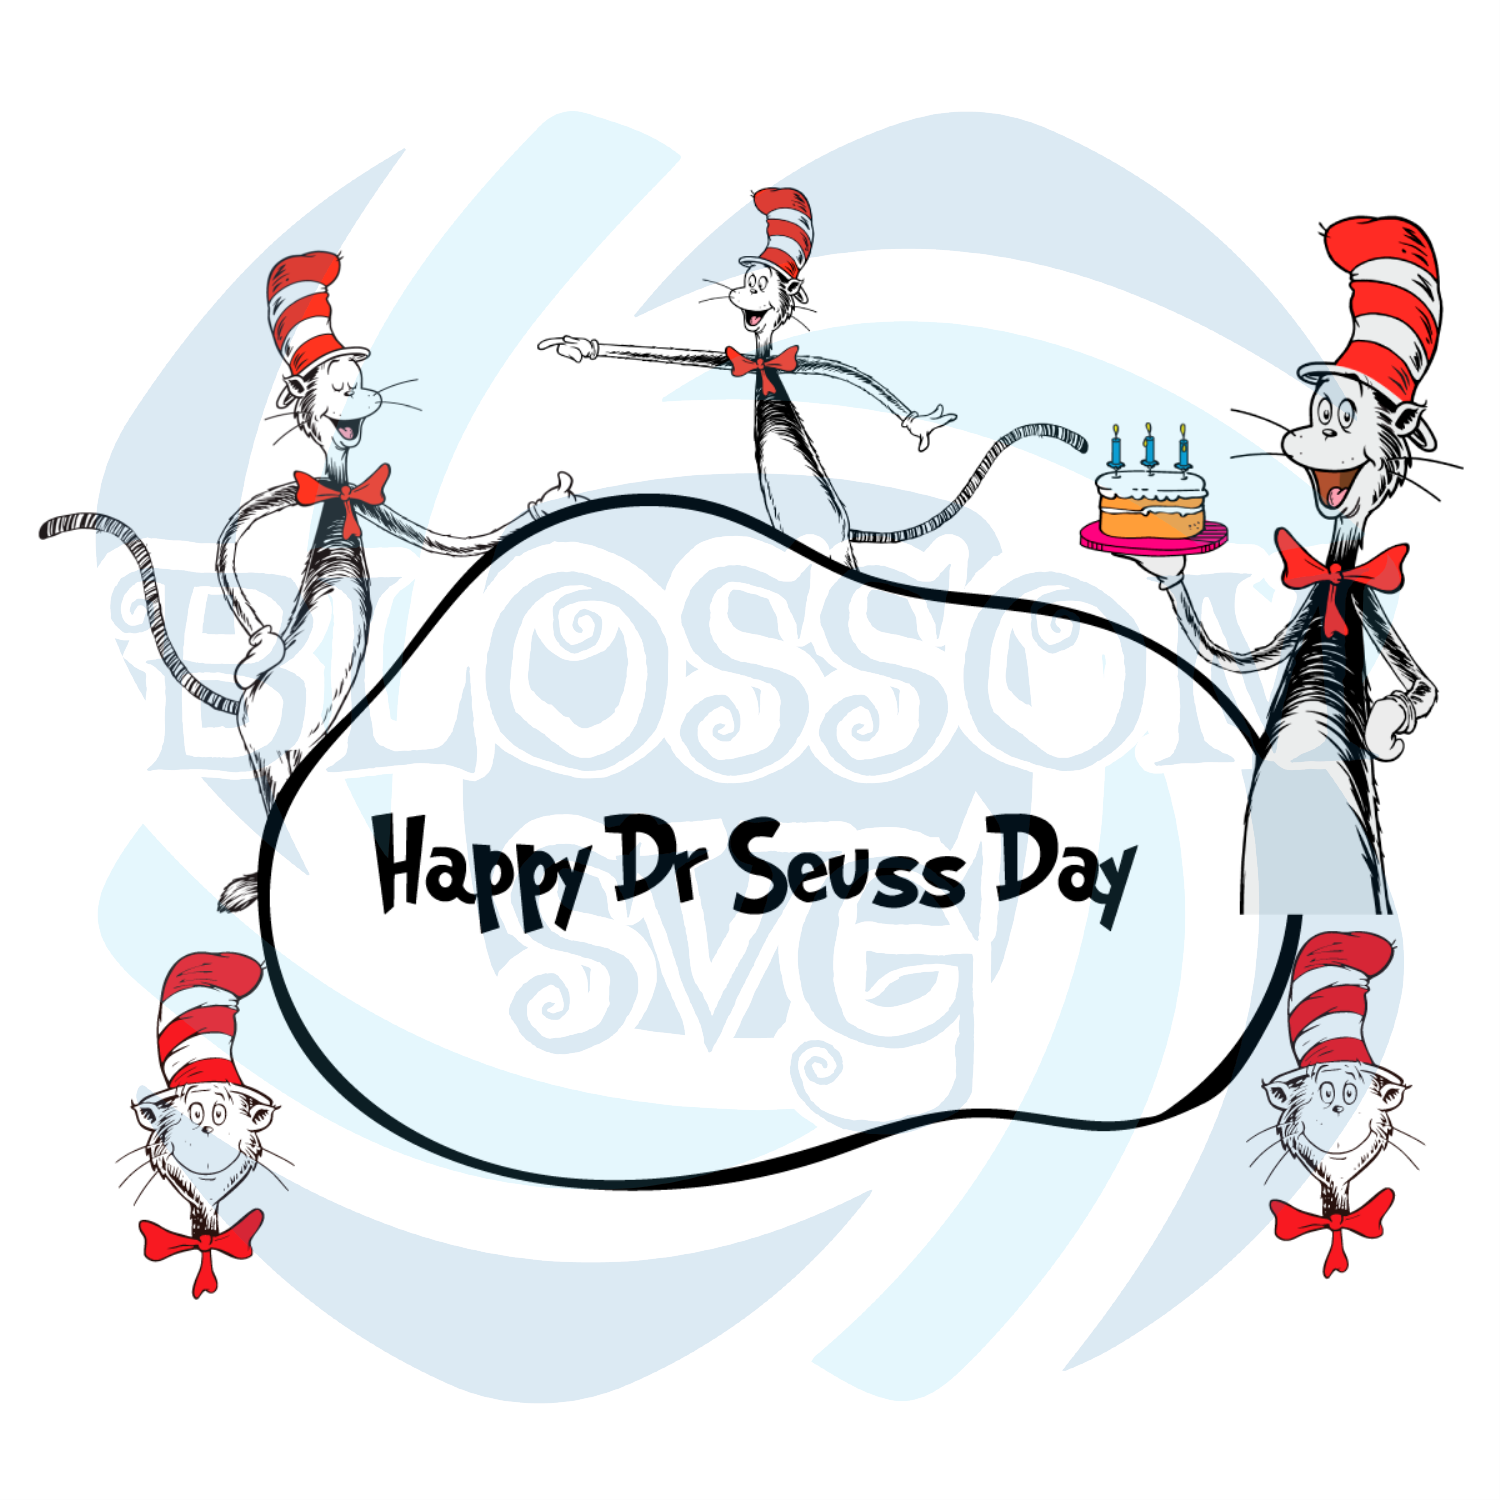 Happy Dr Seuss Day Svg, Trending Svg, Dr. Seuss SVG, Dr Seuss 2021